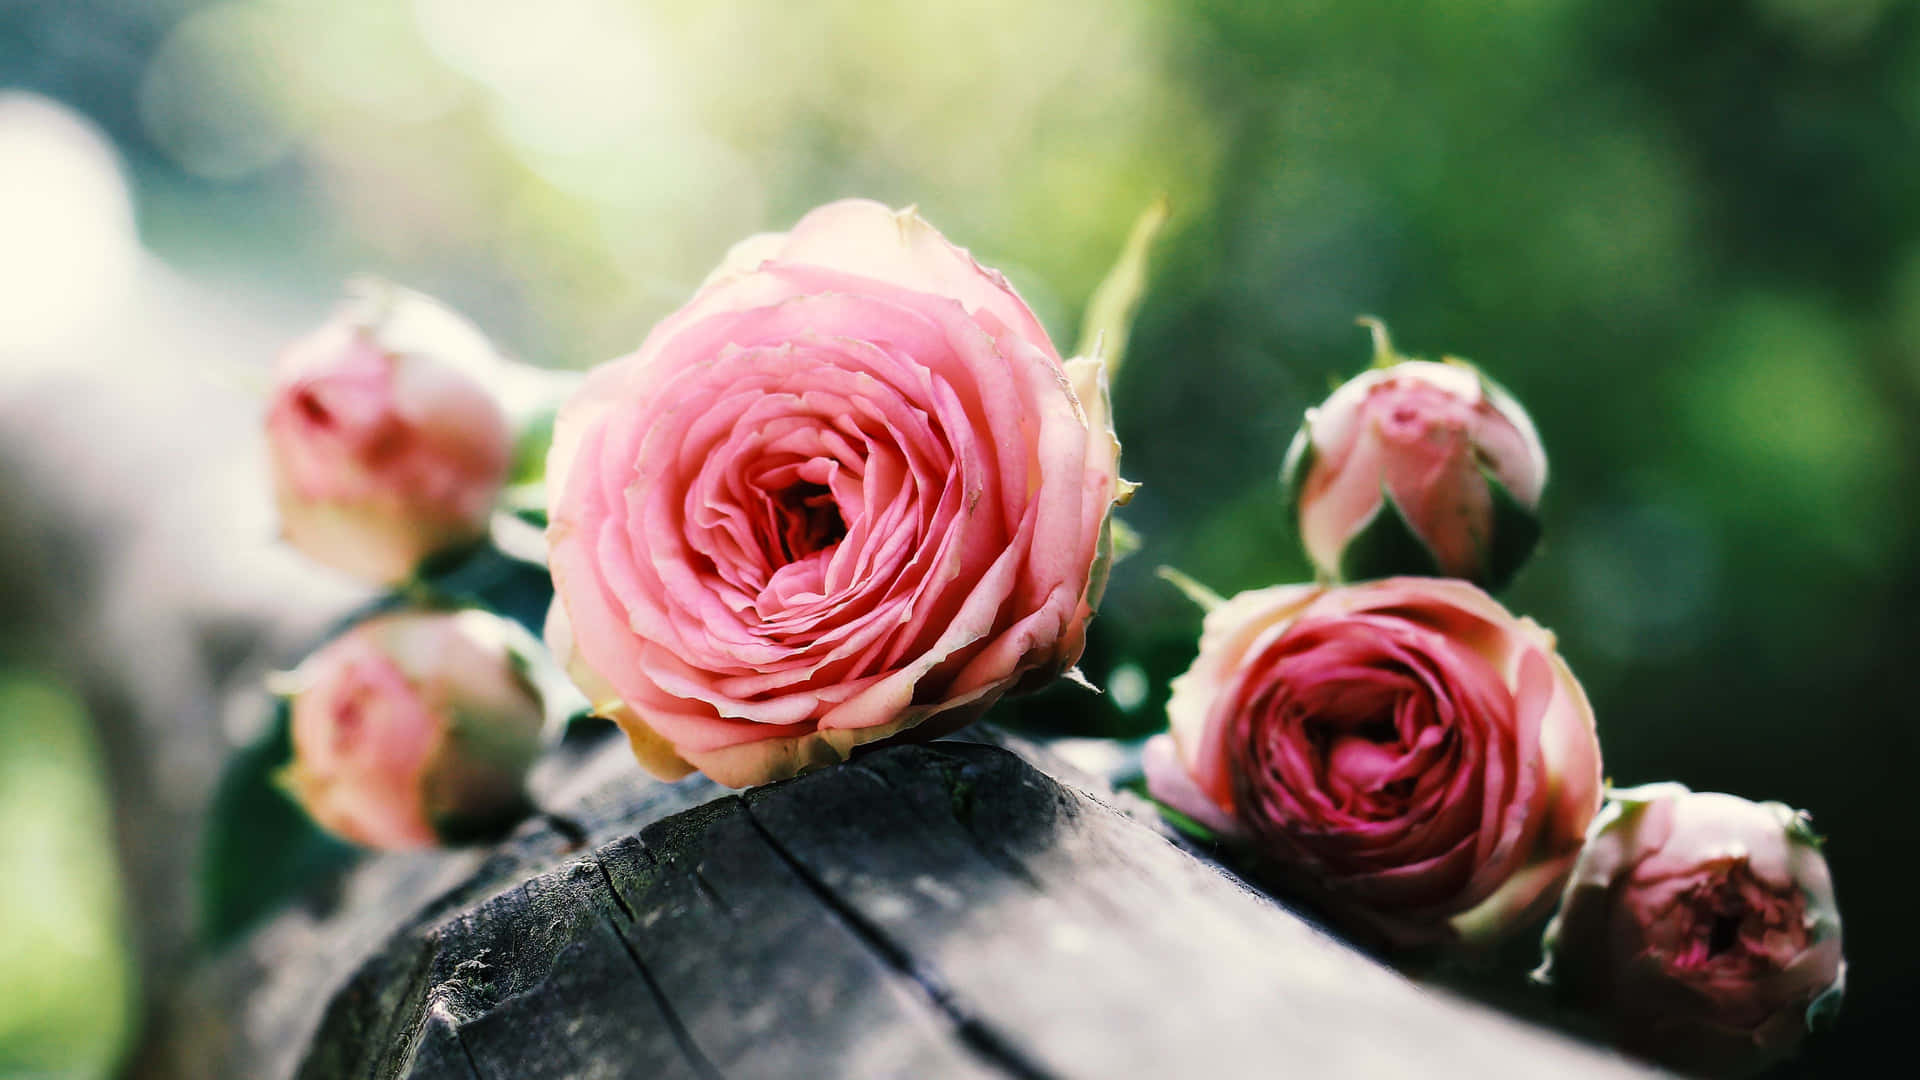 Rosada Giardino Rosa Su Sfondo Di Legno, Immagine Dallo Stile Vintage E Dallo Spirito Estetico